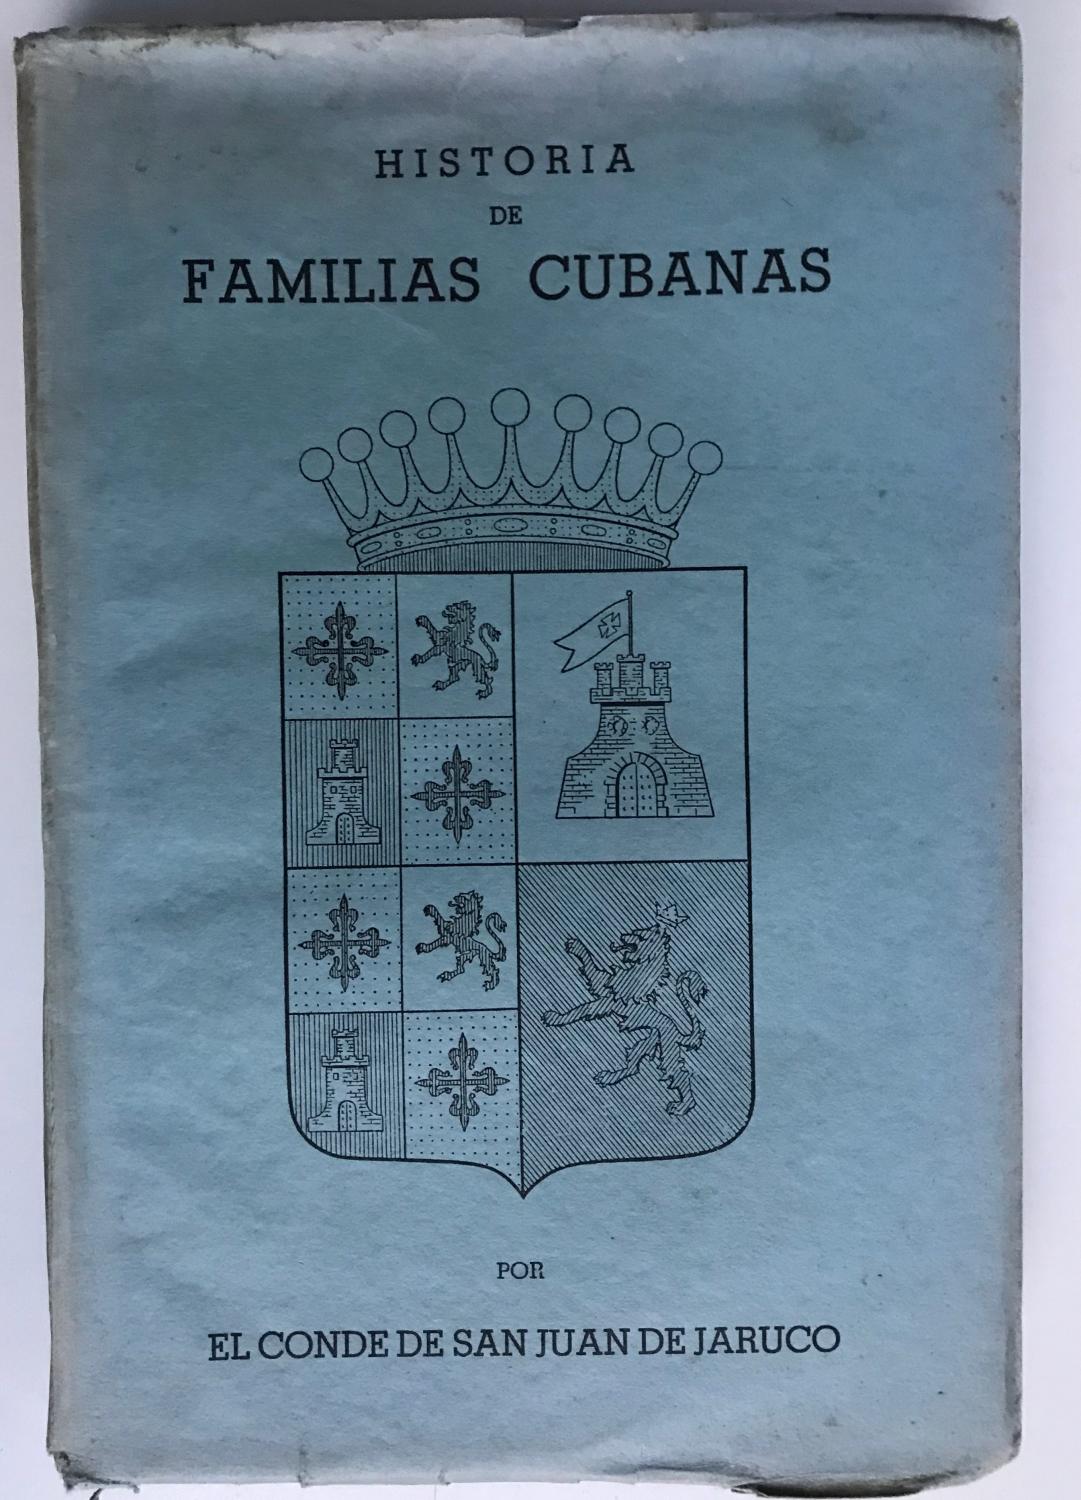 Historia de Familias Cubanas, Tomo Segundo by Francisco Xavier de Santa  Cruz y Mallen: Very Good Paperback (1940) First Edition.